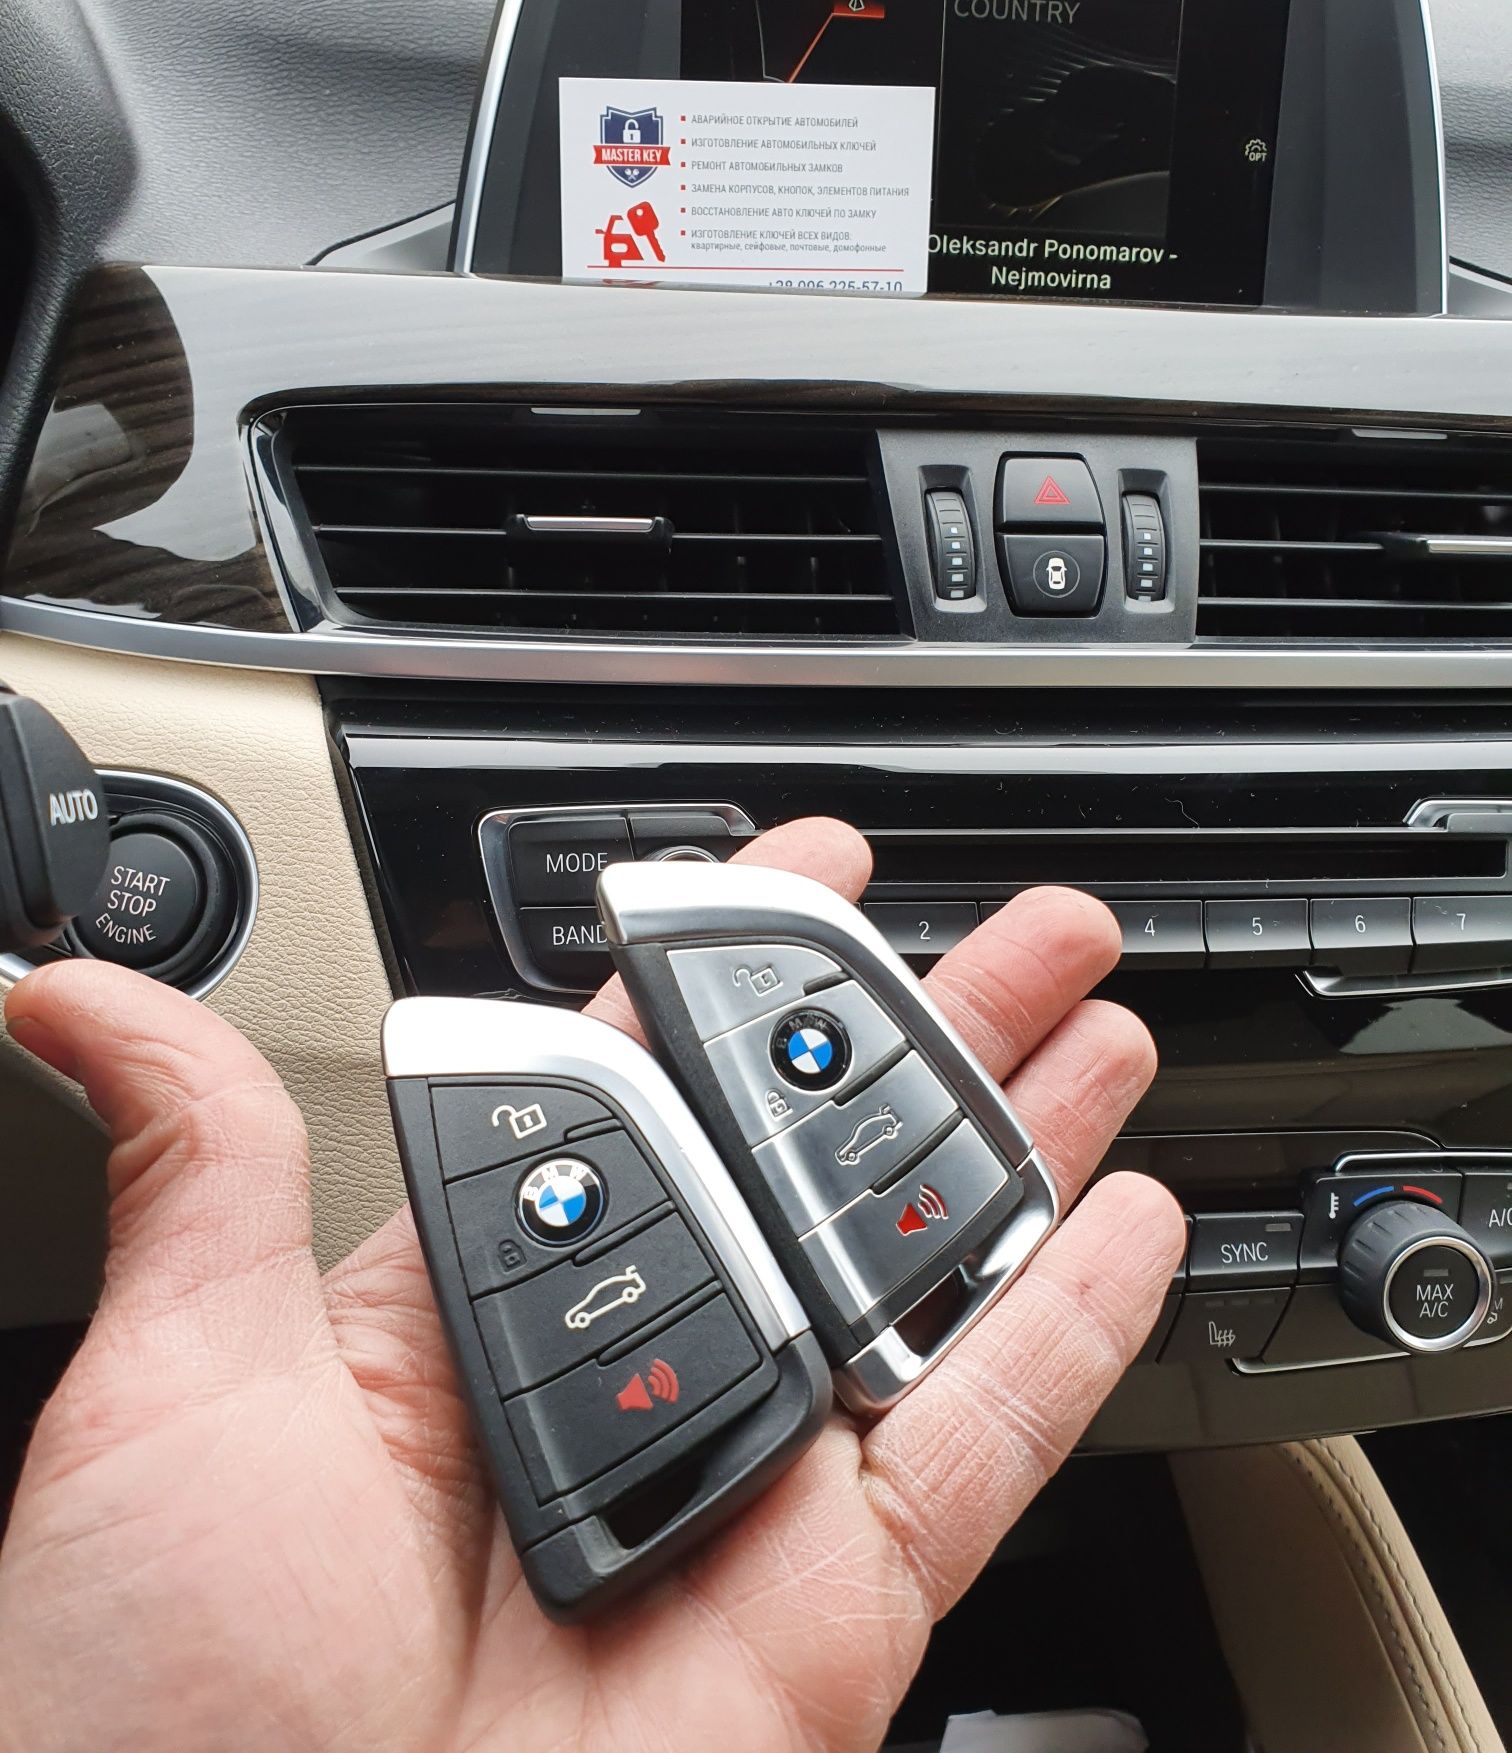 Ключи BMW Программирование Гарантия Недорого